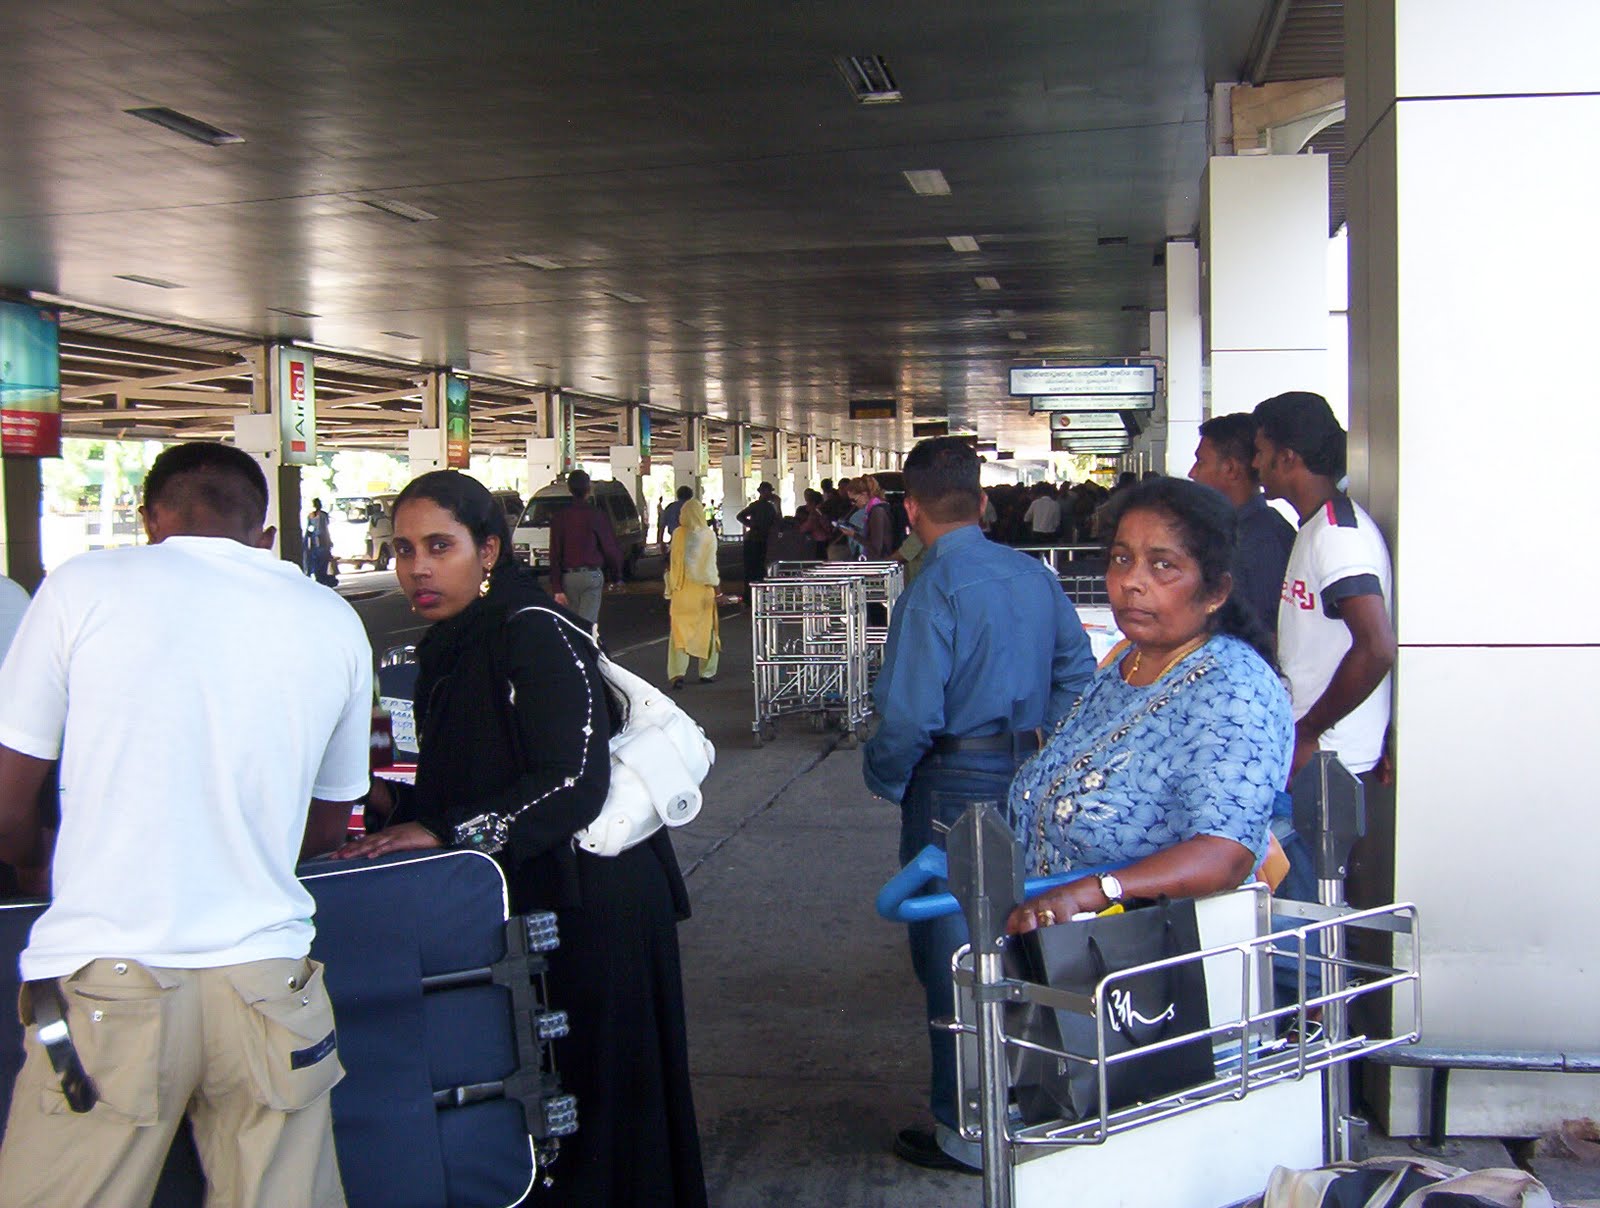 Табло аэропорта коломбо шри ланка. Аэропорт на Шри Ланке Коломбо. Международный аэропорт Коломбо. Аэропорт Коломбо Шри Ланка. Коломбо аэропорт встречающие компанией фото.